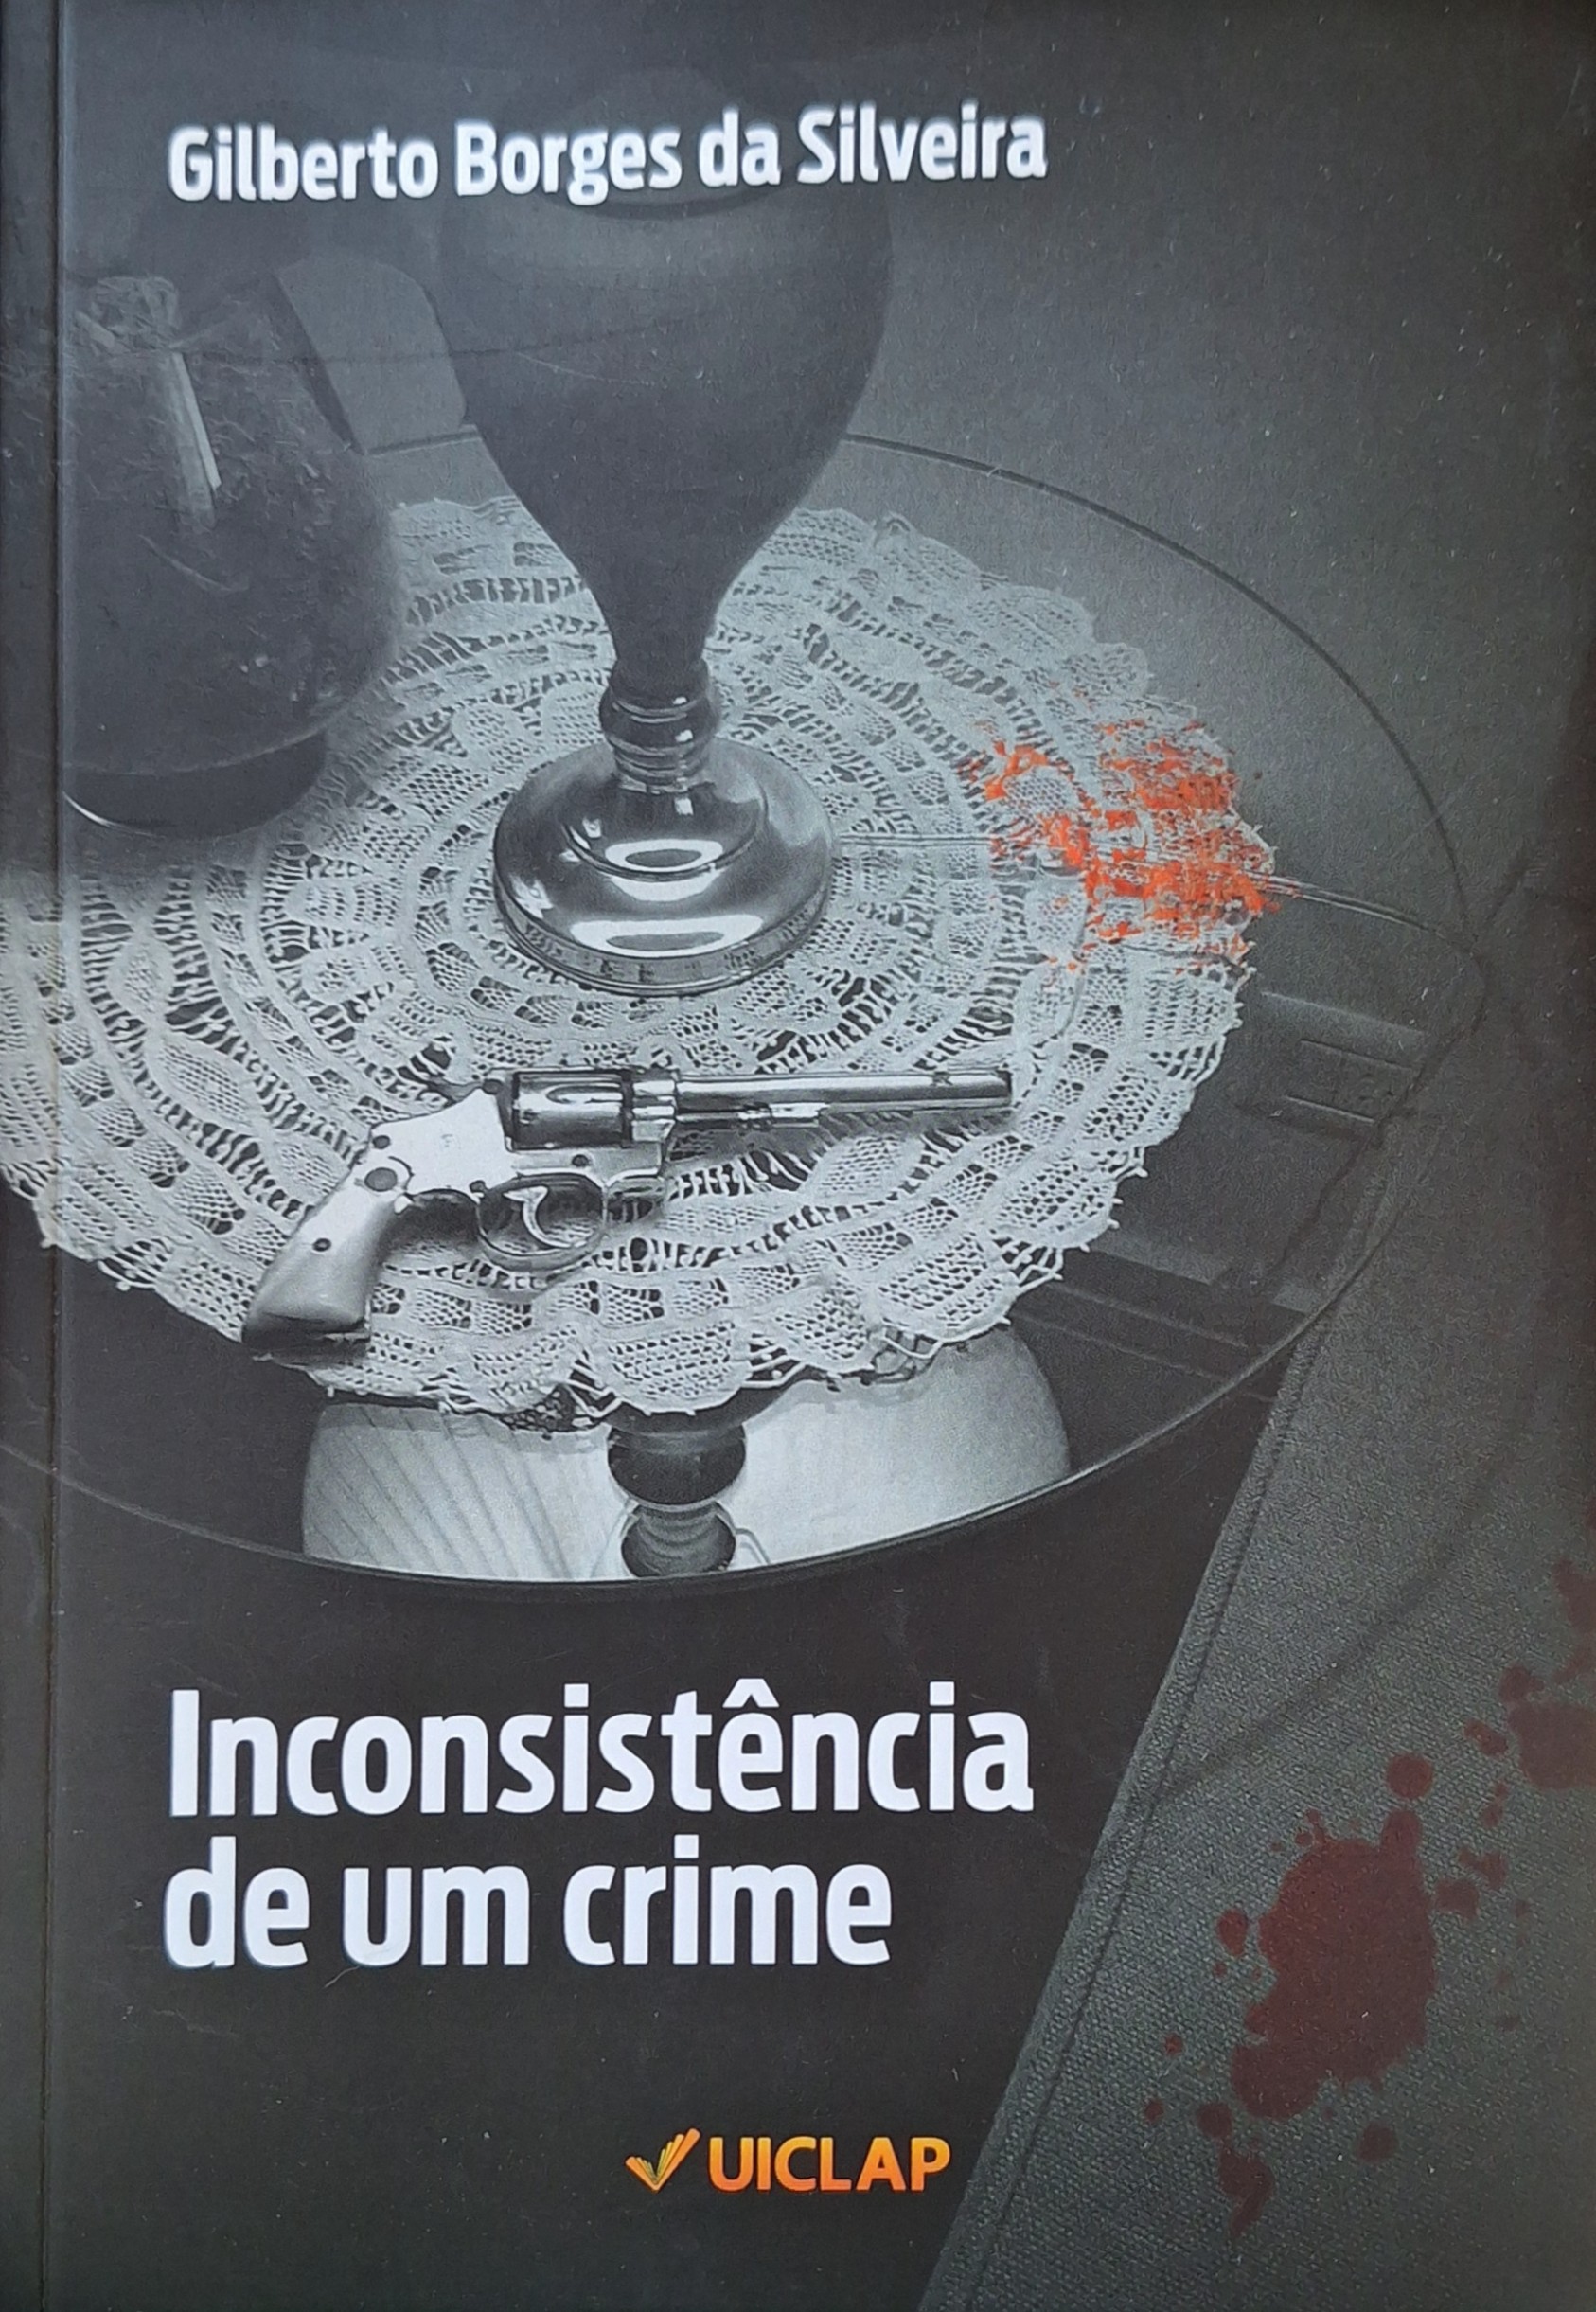 Capa do livro 'Inconsistência de um crima' de Gilberto da Silva Borges, pela Editora Uiclap 